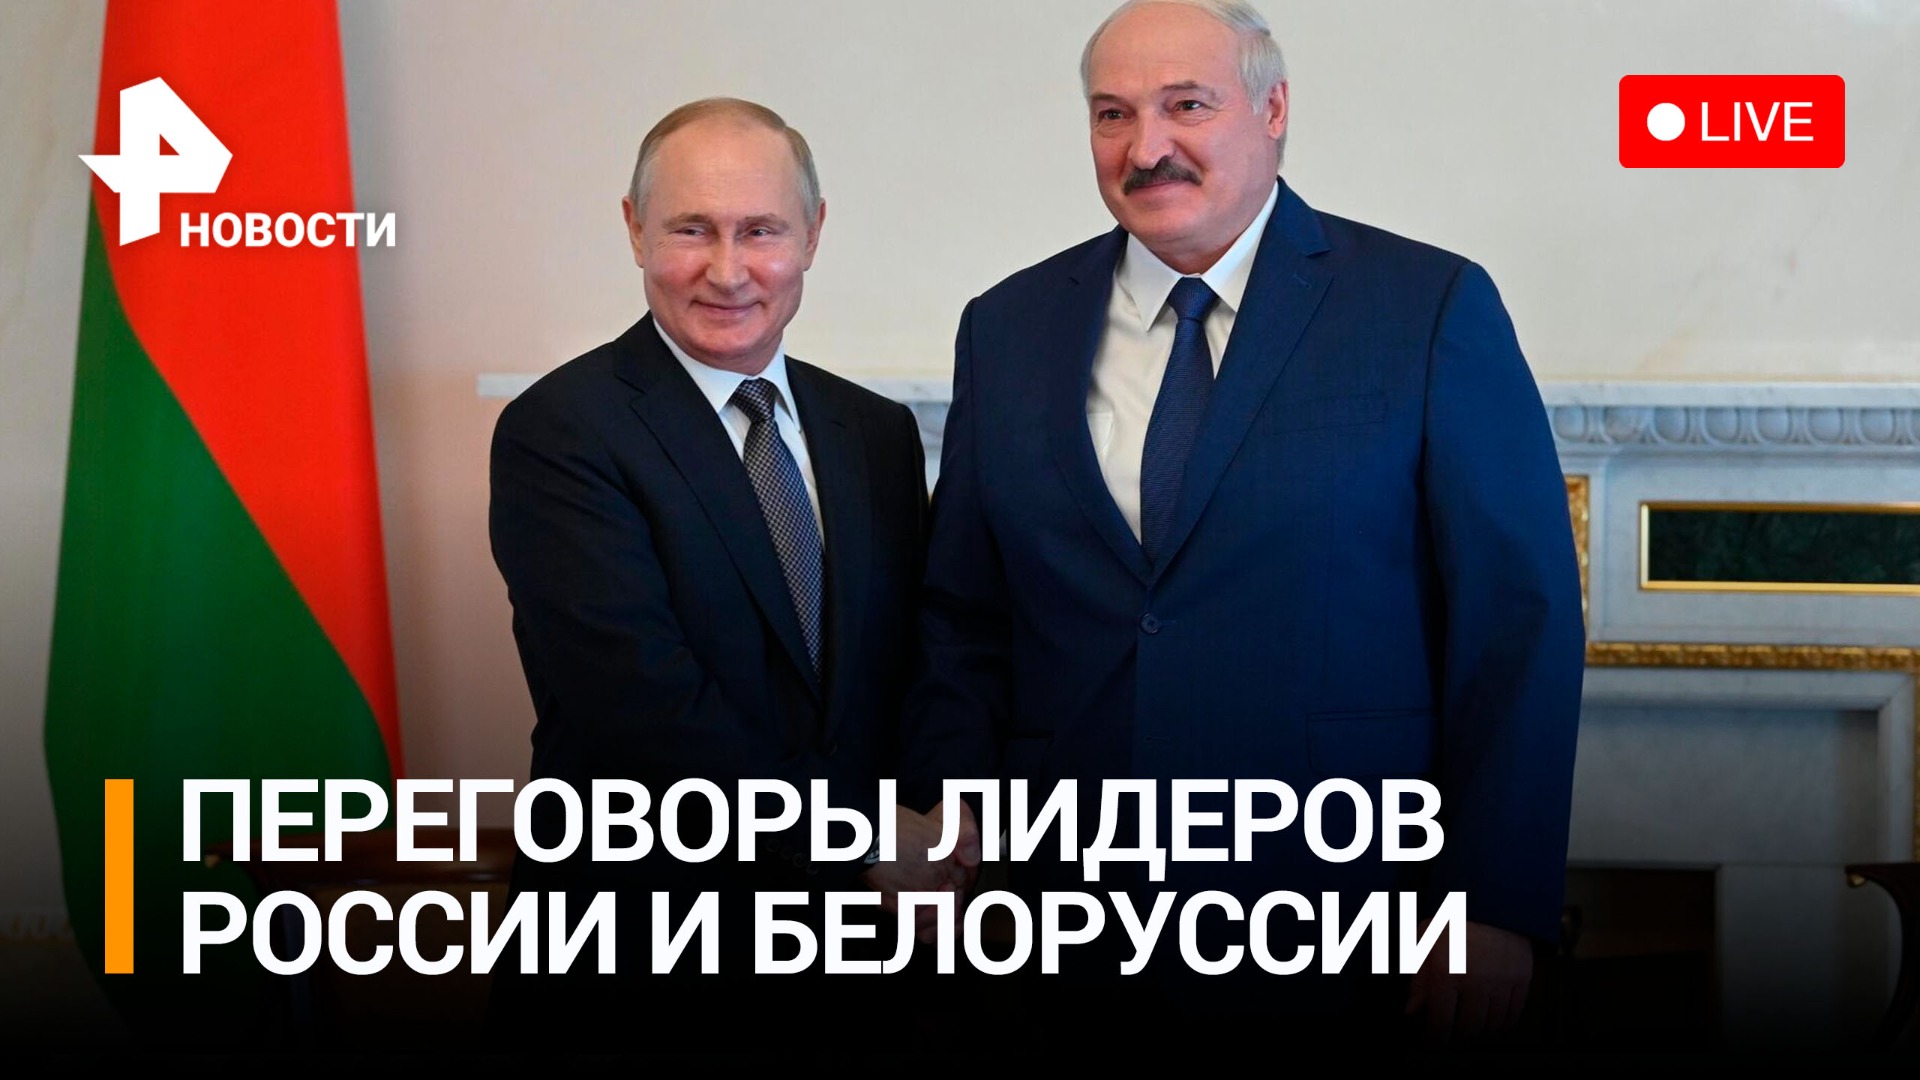 Владимир Путин и Александр Лукашенко проводят переговоры в Минске / РЕН Новости